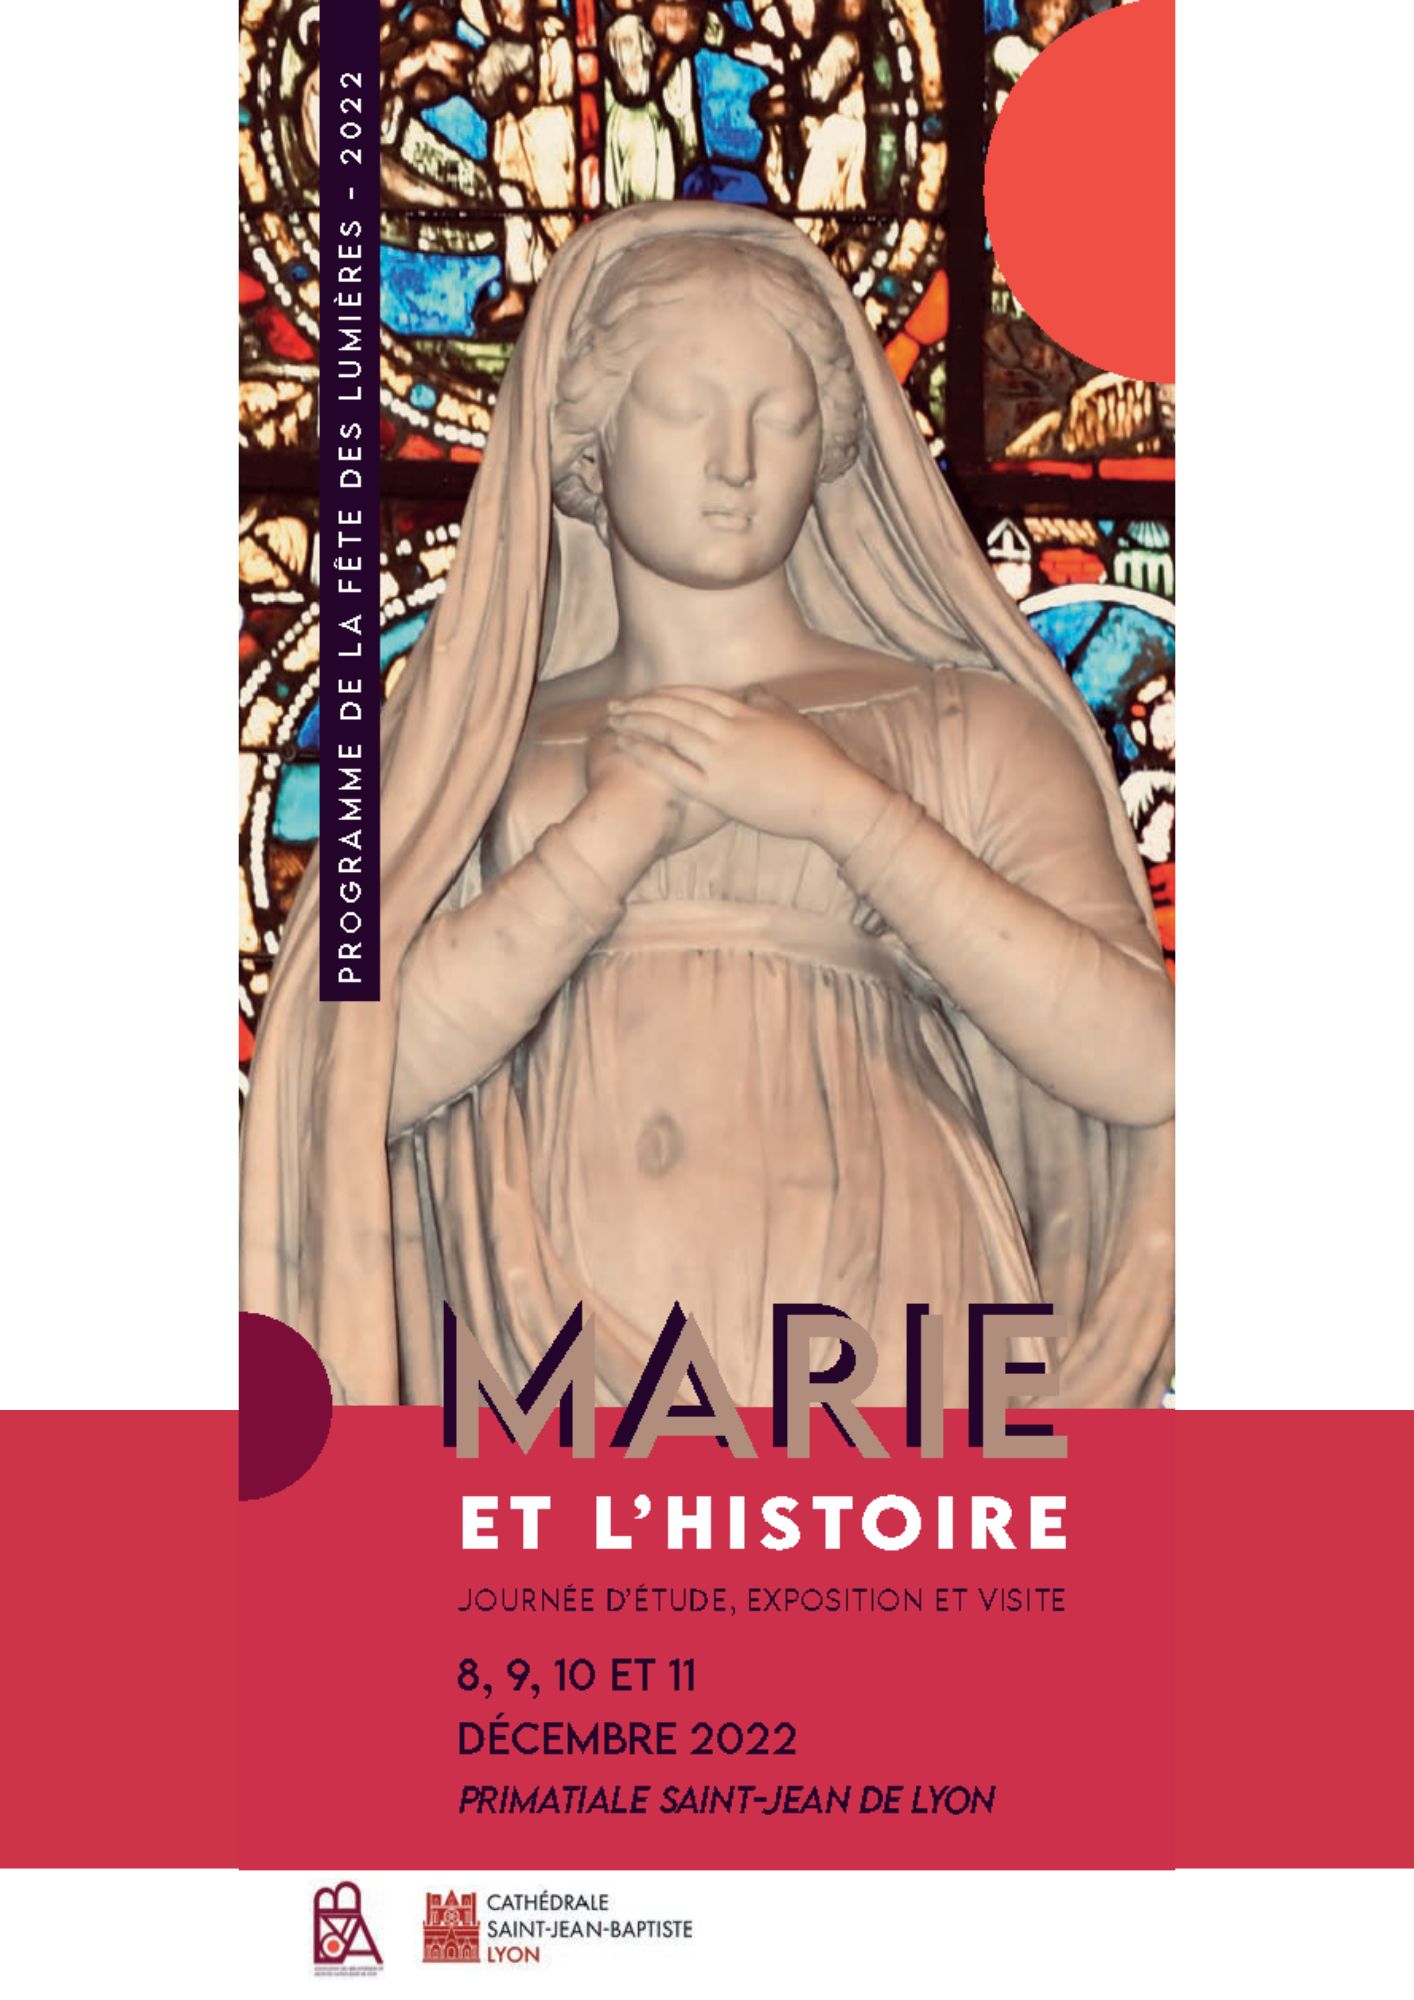 Marie et l'histoire. Journée d'étude, exposition et visite. Du 8 au 11 décembre 2022